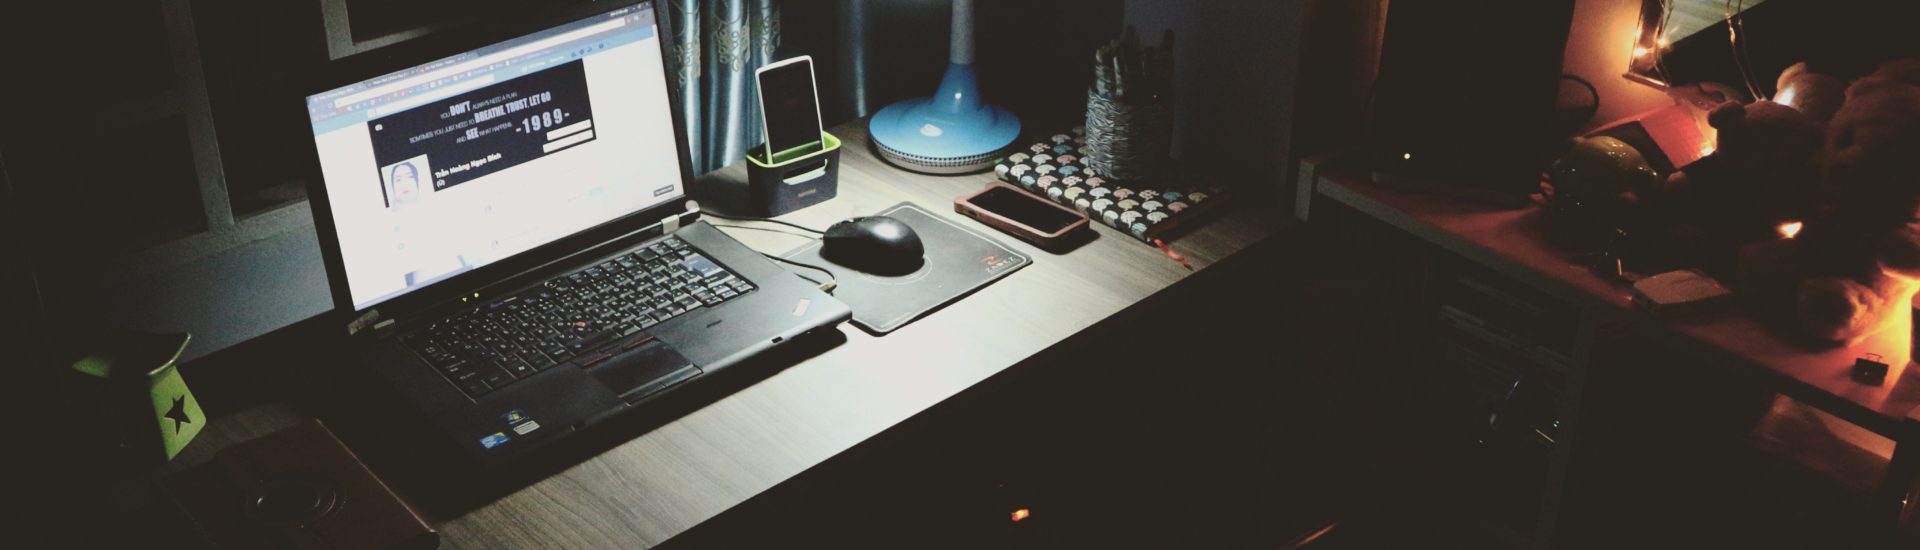 Laptop am Schreibtisch Nachts